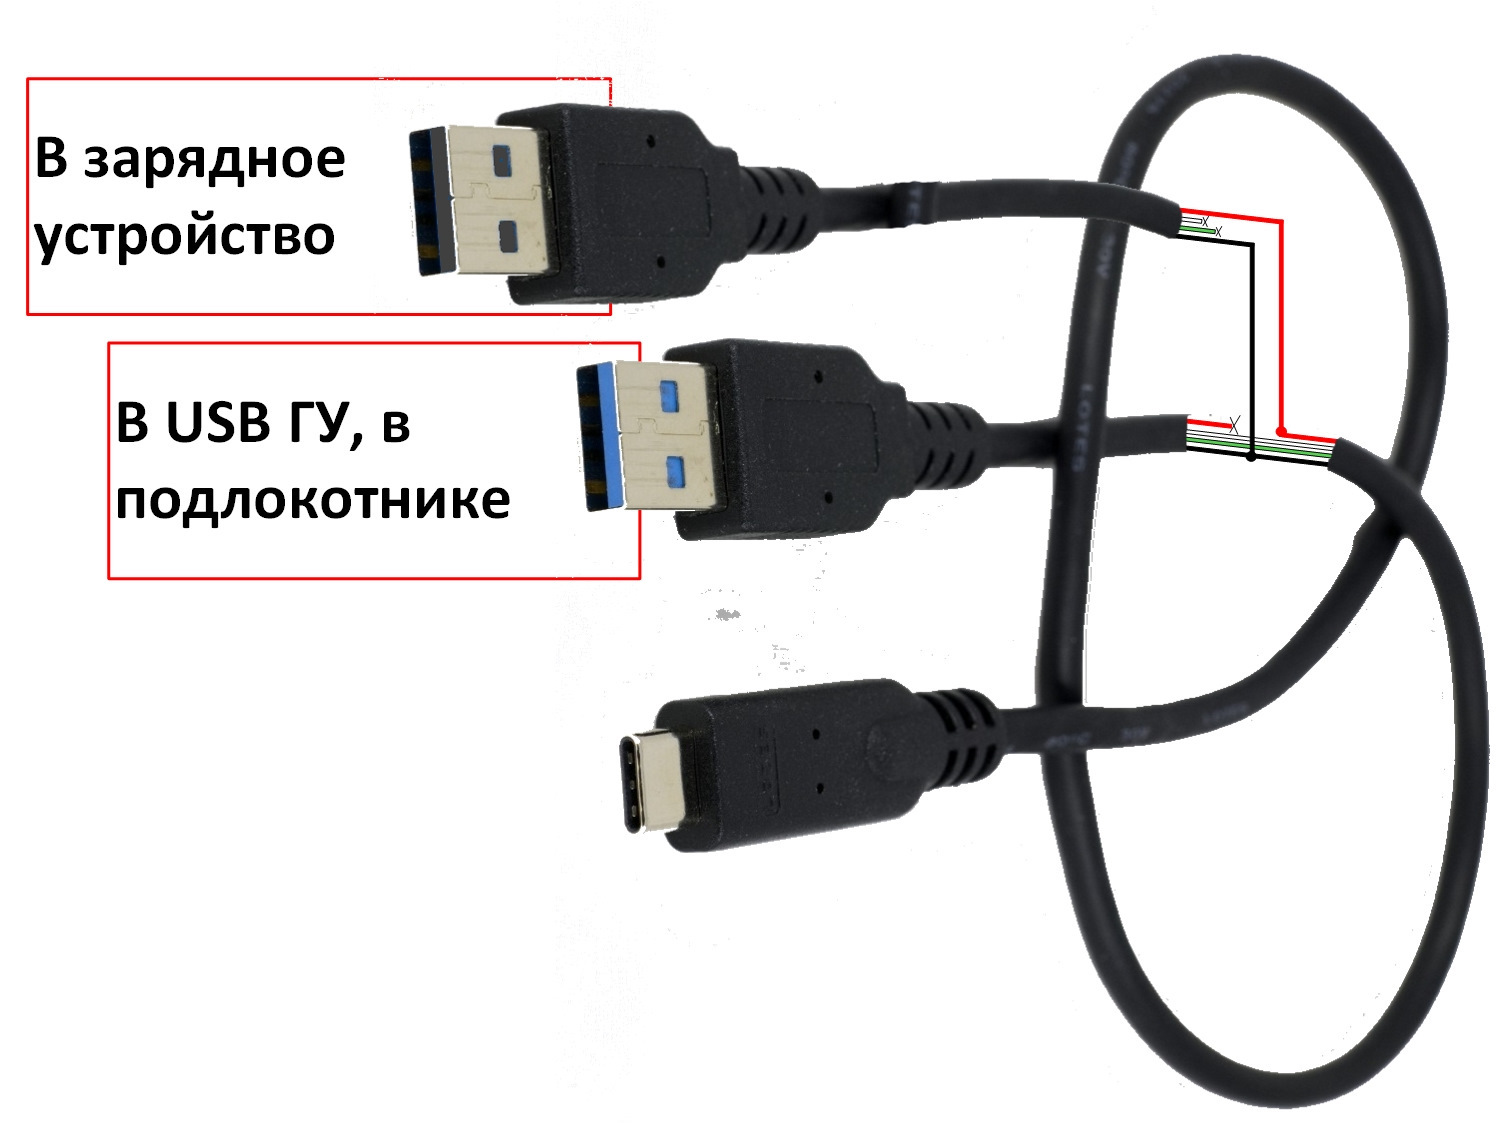 Управление телефоном через usb. Увеличитель порта USB. Как подключить подлокотник с USB. Зарядки для телефона Джили монджаро.